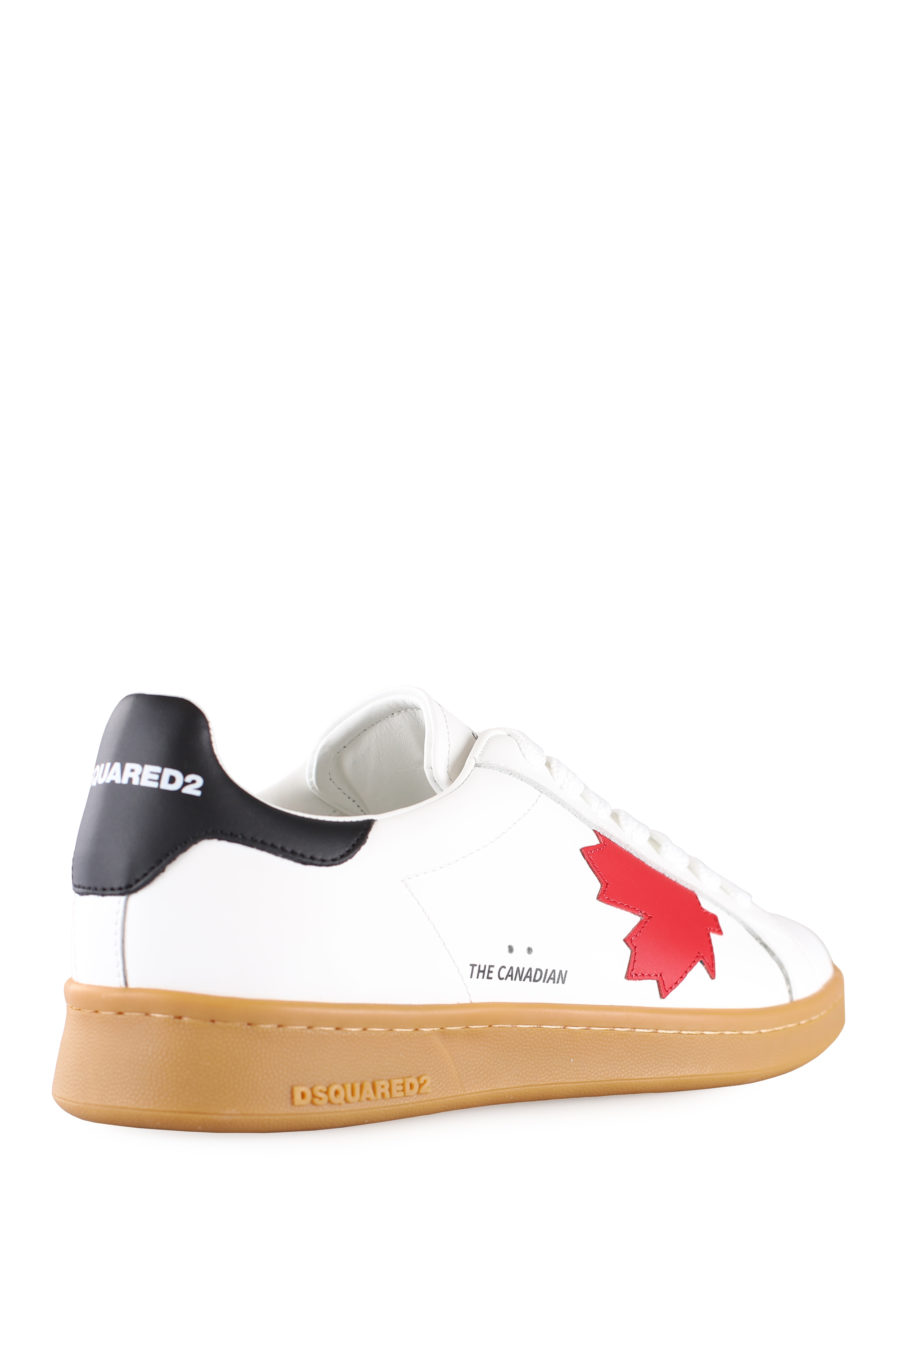 Zapatillas blancas con hoja roja y suela marrón - IMG 0024